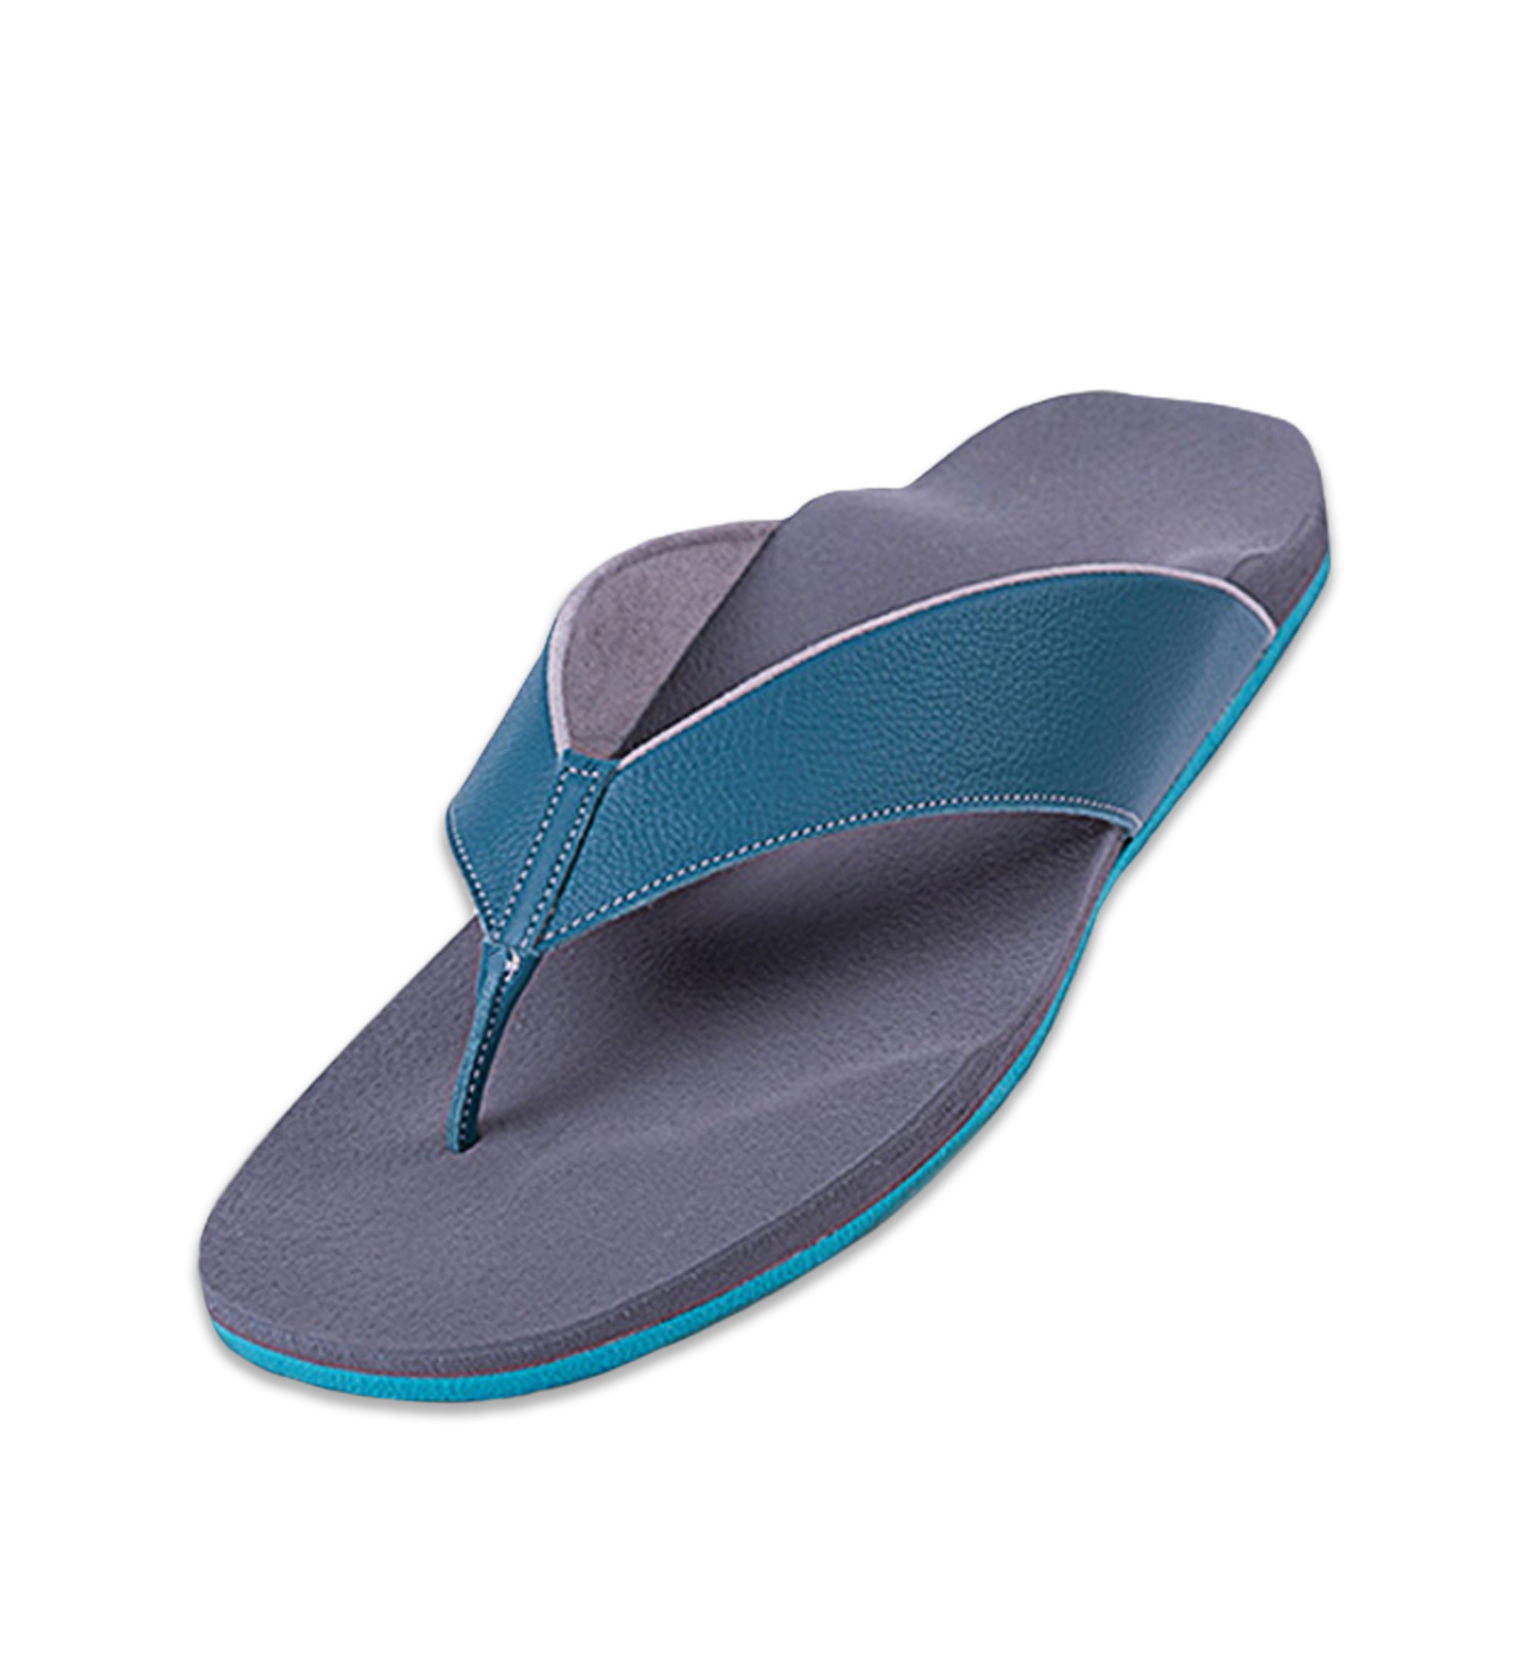 Das Bild zeigt maßgefertigte IQ Flops mit blauem Zehensteg und dunkler Decksohle. Zu sehen ist deutlich das individuelle orthopädische Fußbett. Ein Modell im Stile eines Flipflops.